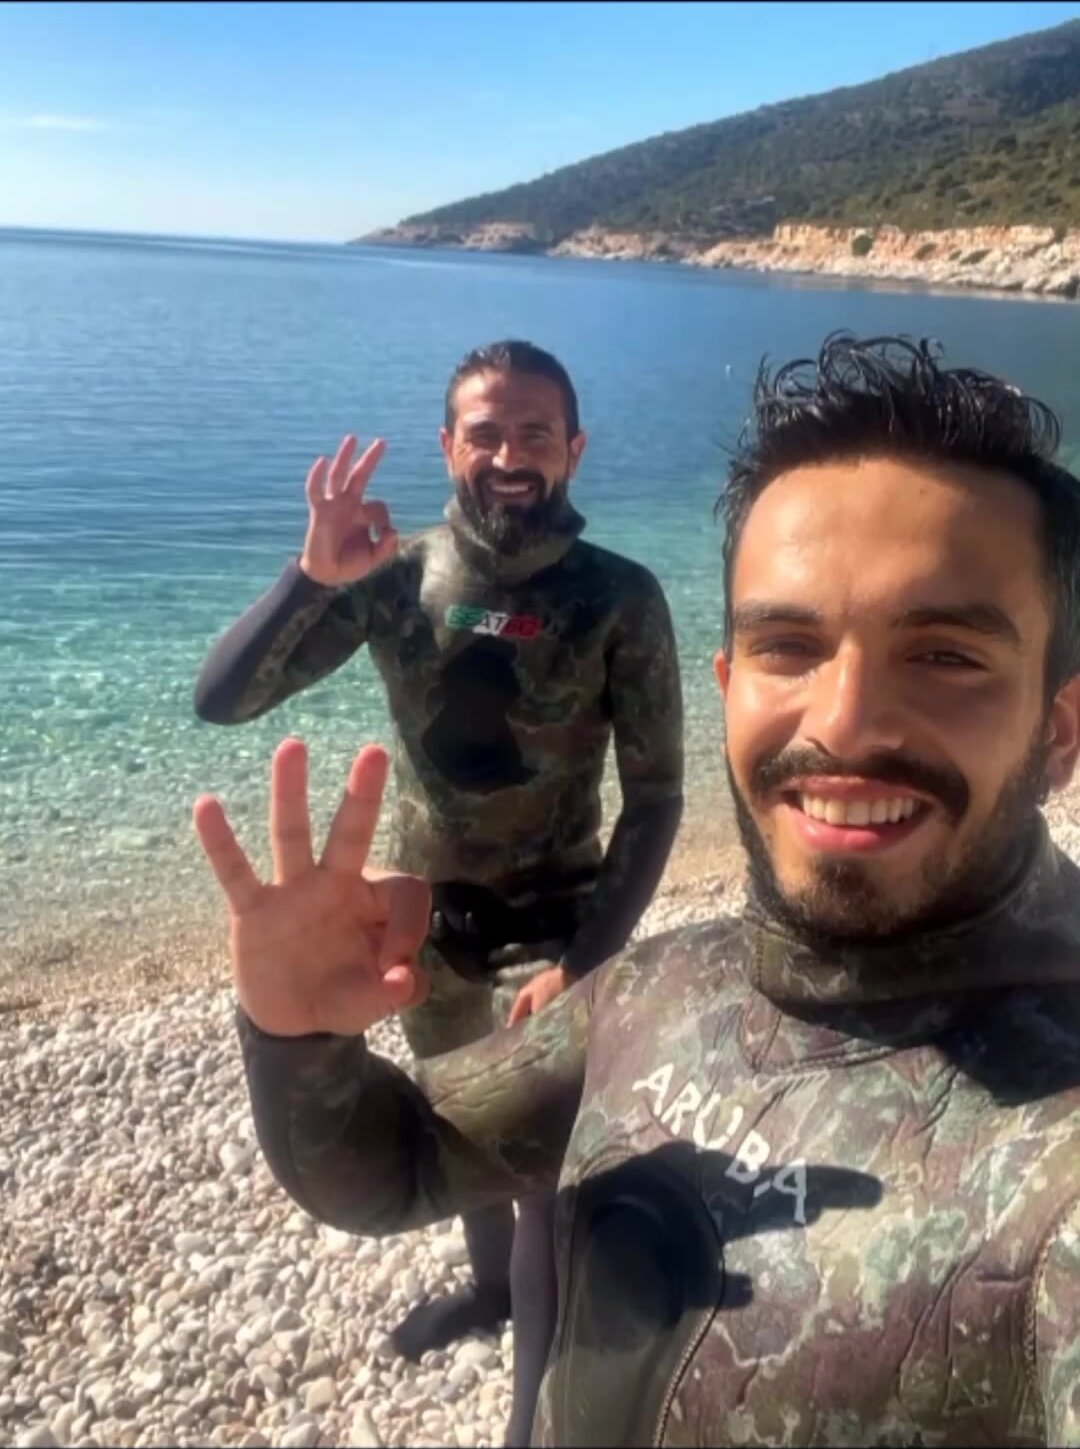 Turkish freedivers underwater in wetsuits